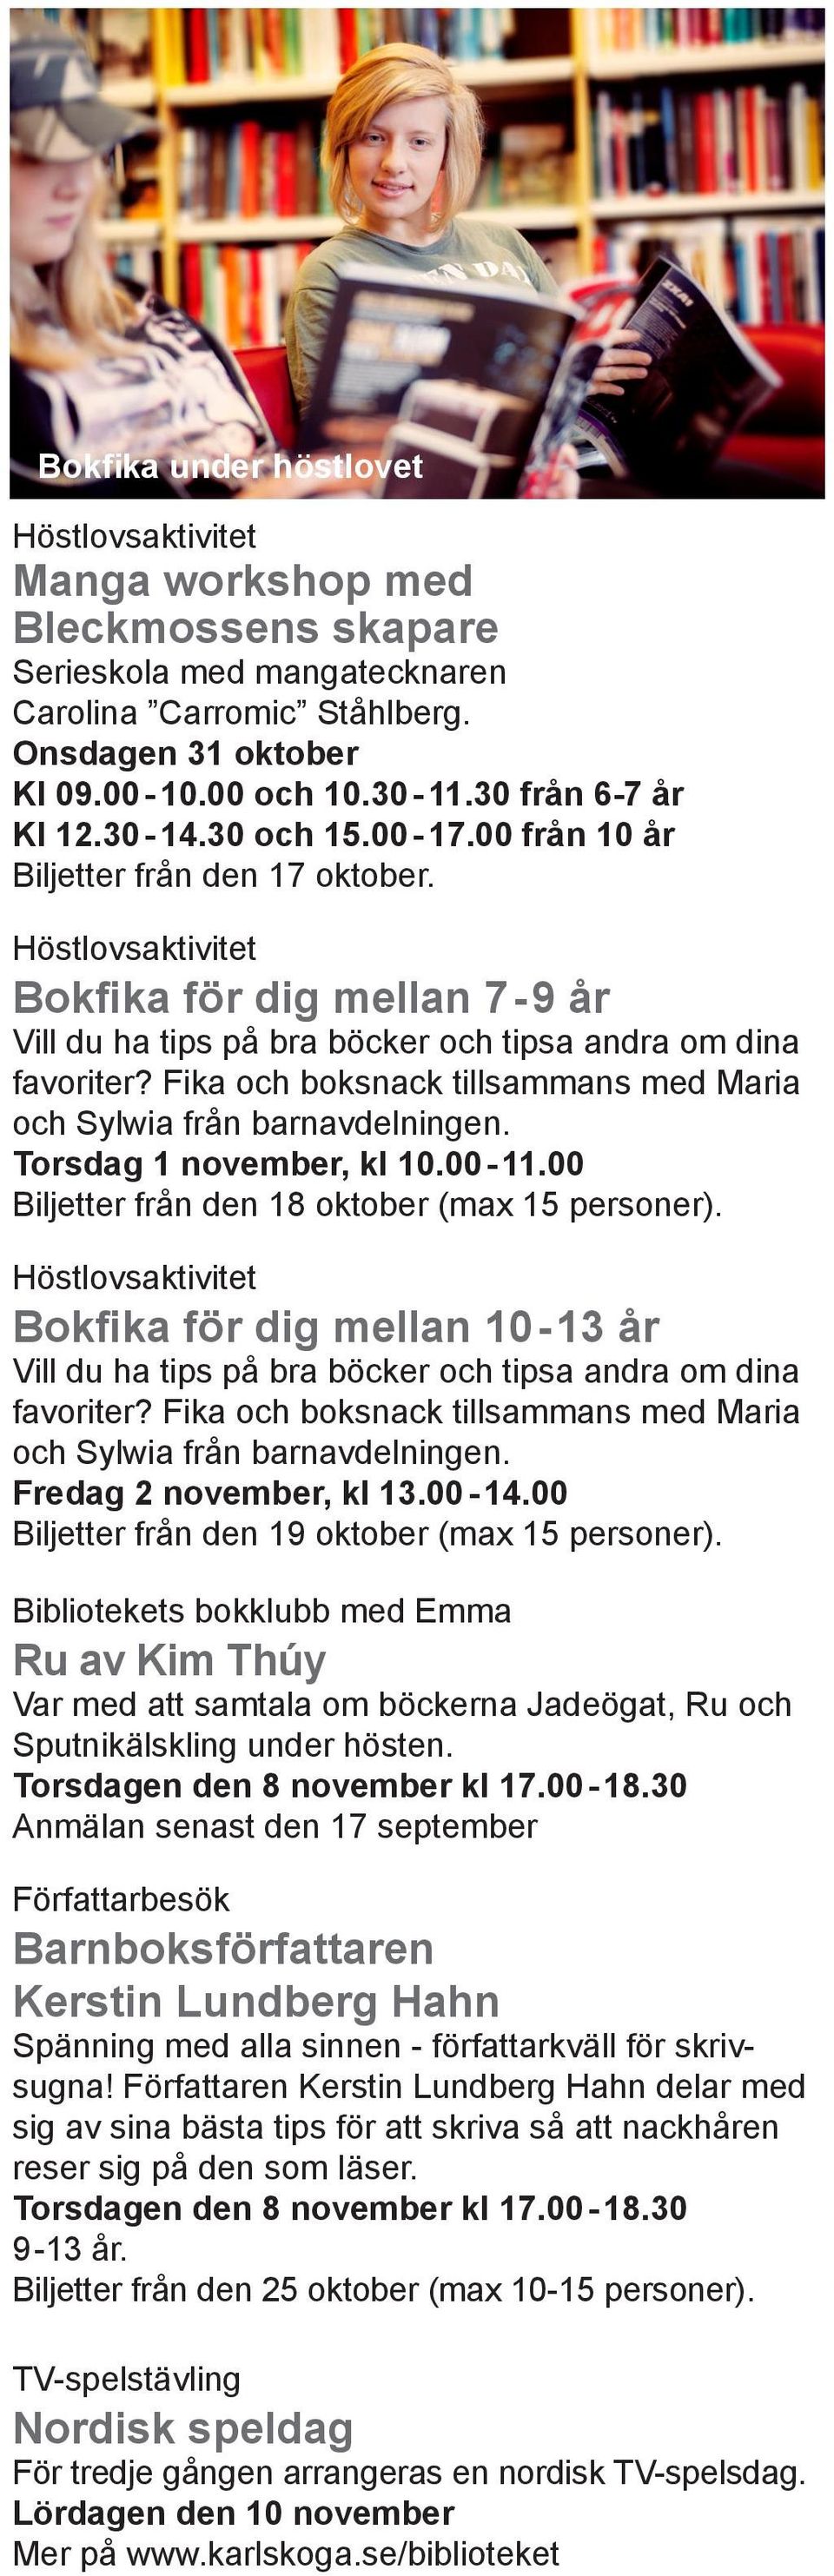 Fika och boksnack tillsammans med Maria och Sylwia från barnavdelningen. Torsdag 1 november, kl 10.00-11.00 Biljetter från den 18 oktober (max 15 personer).